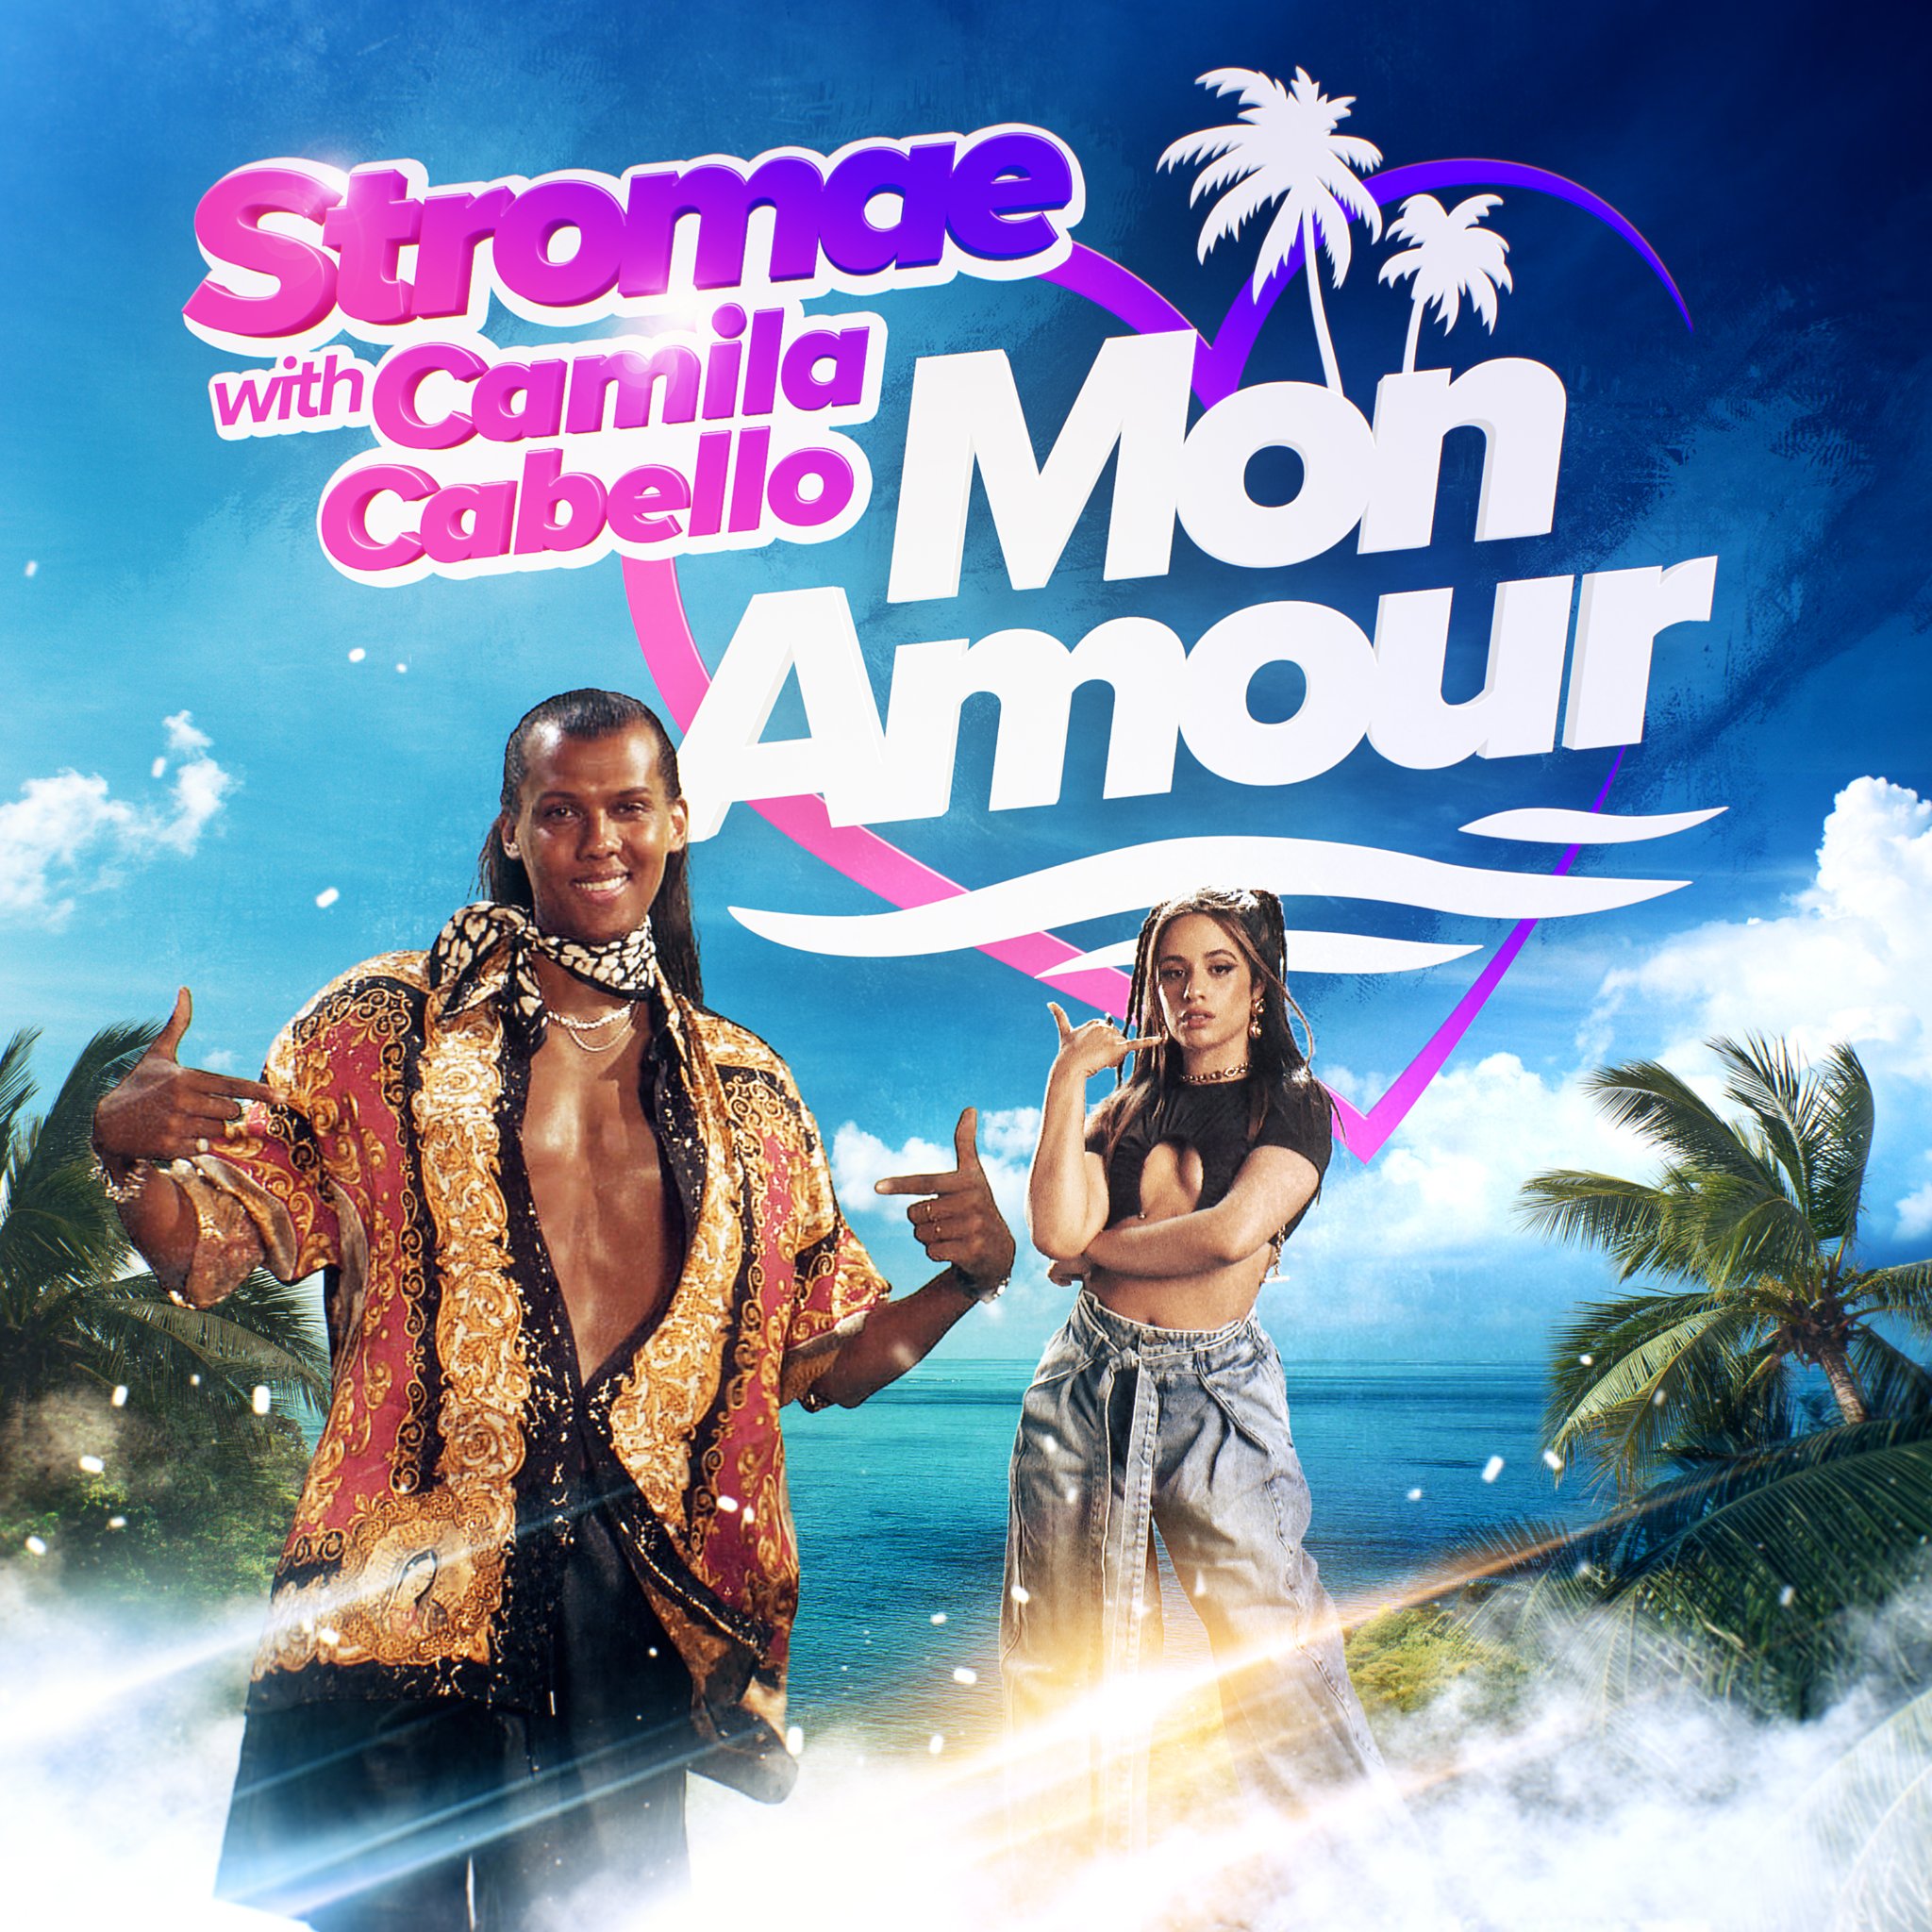 Mon amour", le nouveau single de Stromae feat. Camila Cabello - Just Music